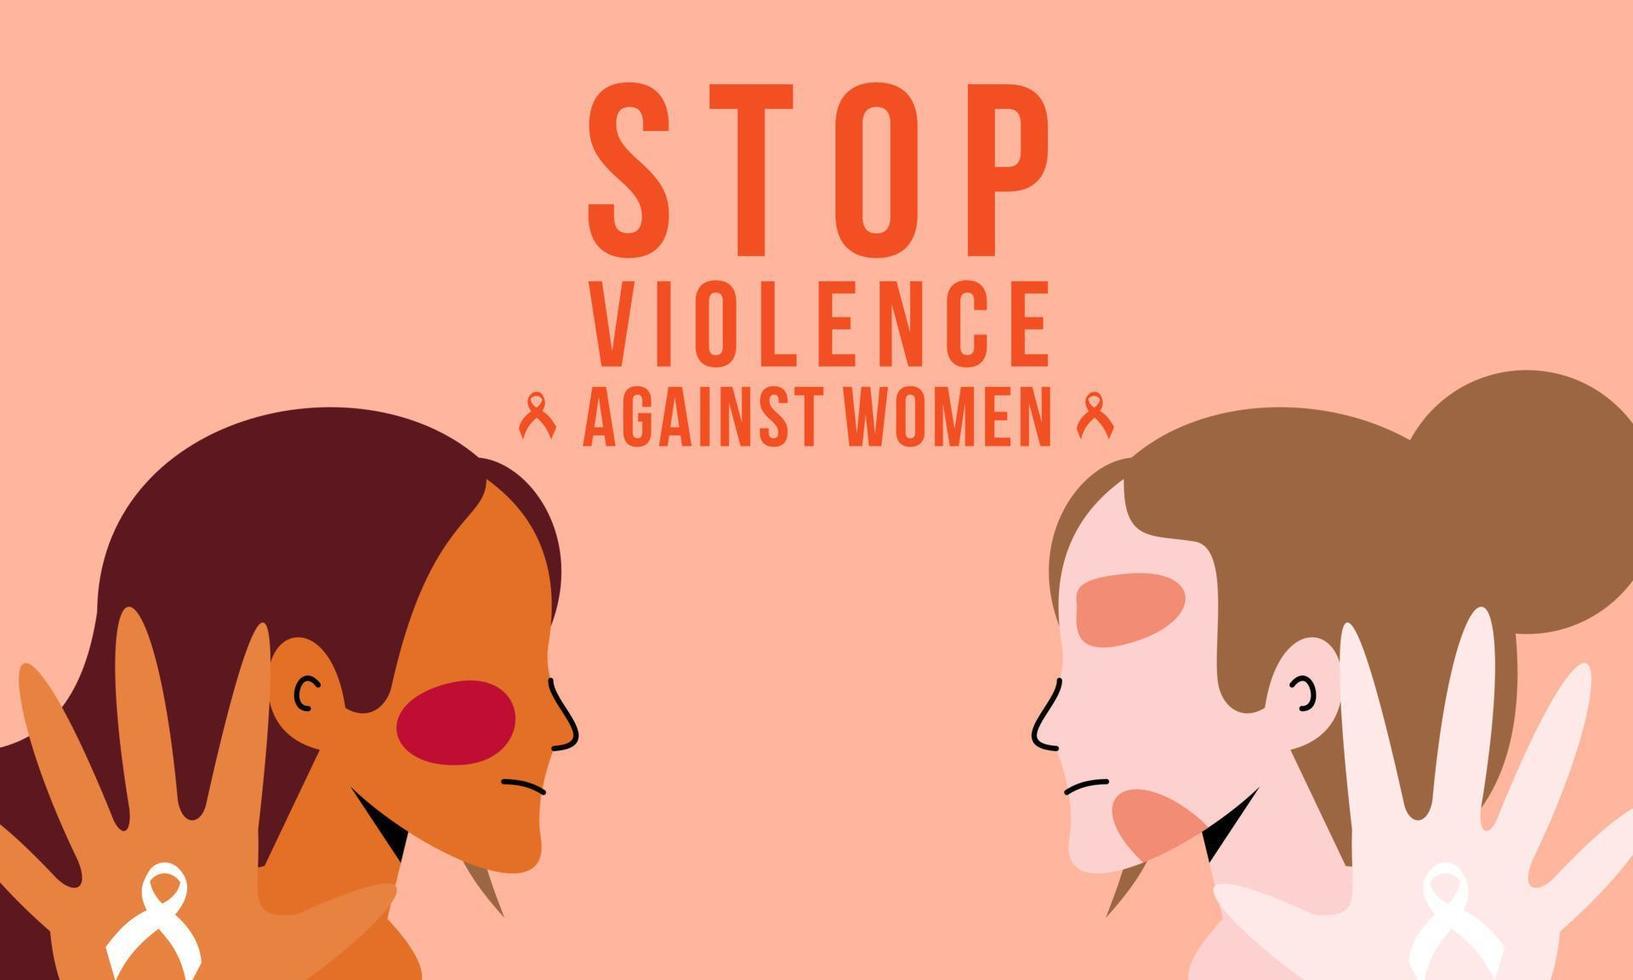 detener la violencia contra las mujeres fondo de banner vector